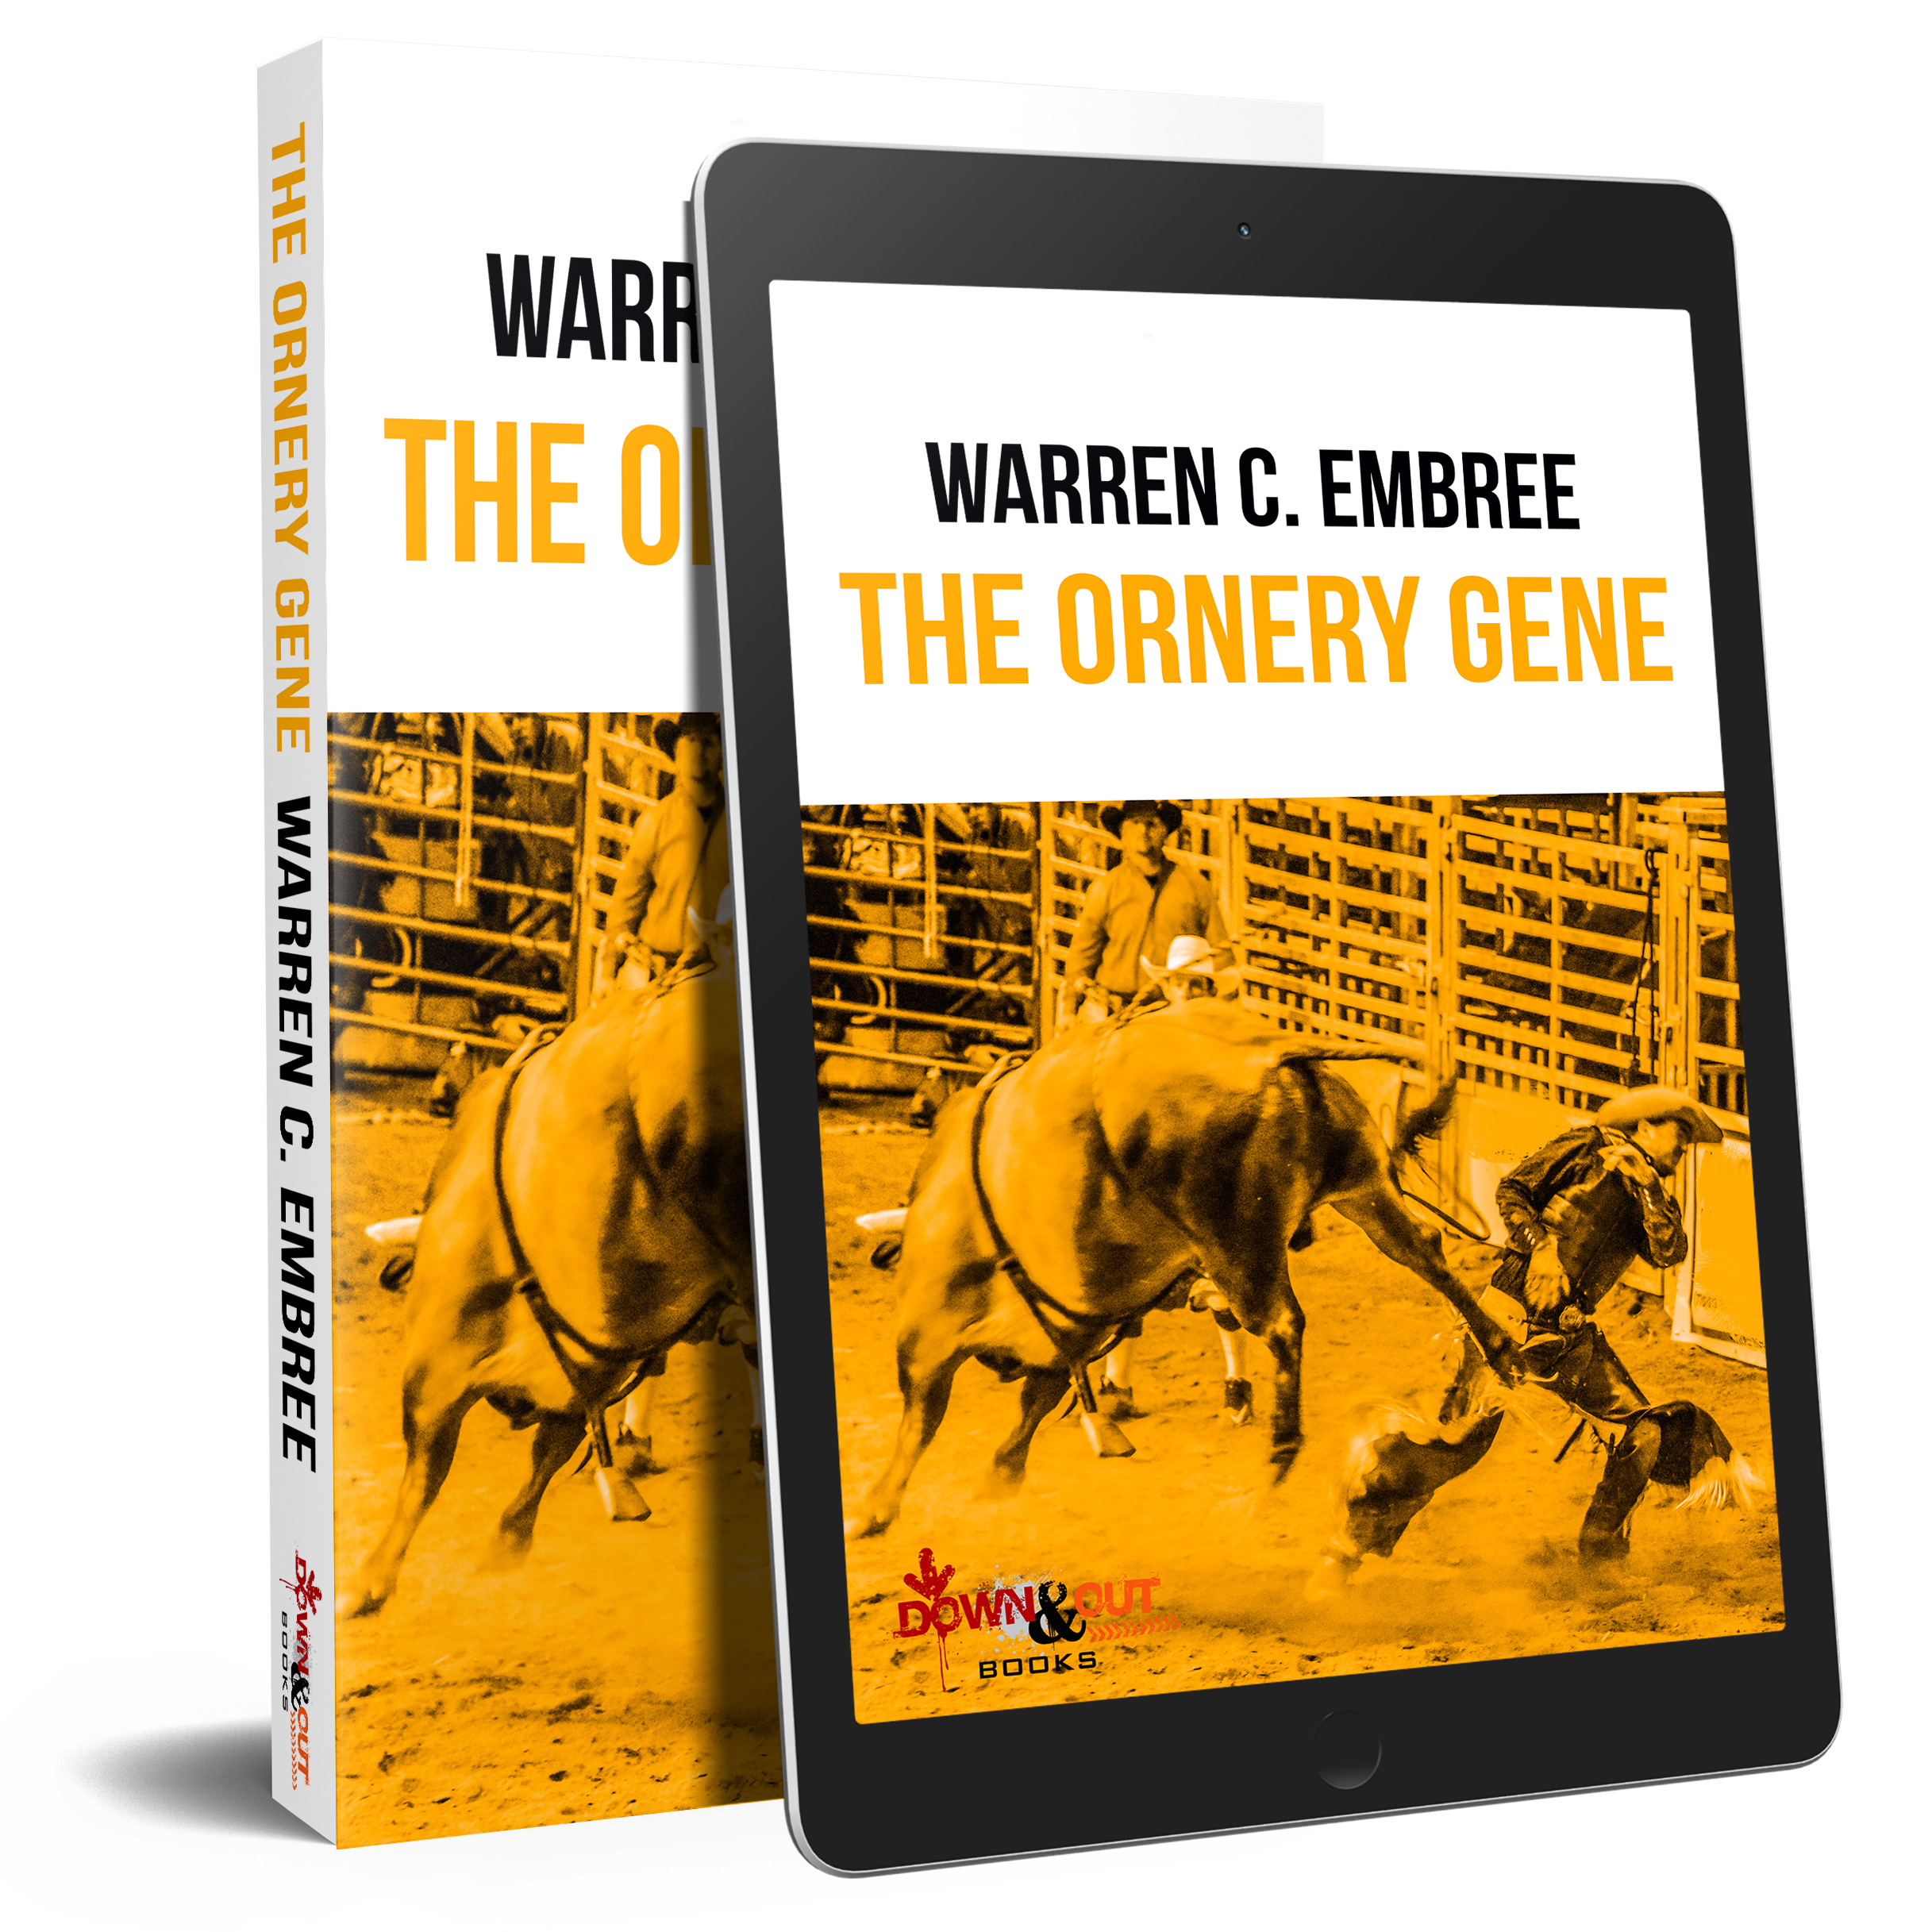 The Ornery Gene by Warren C Embree